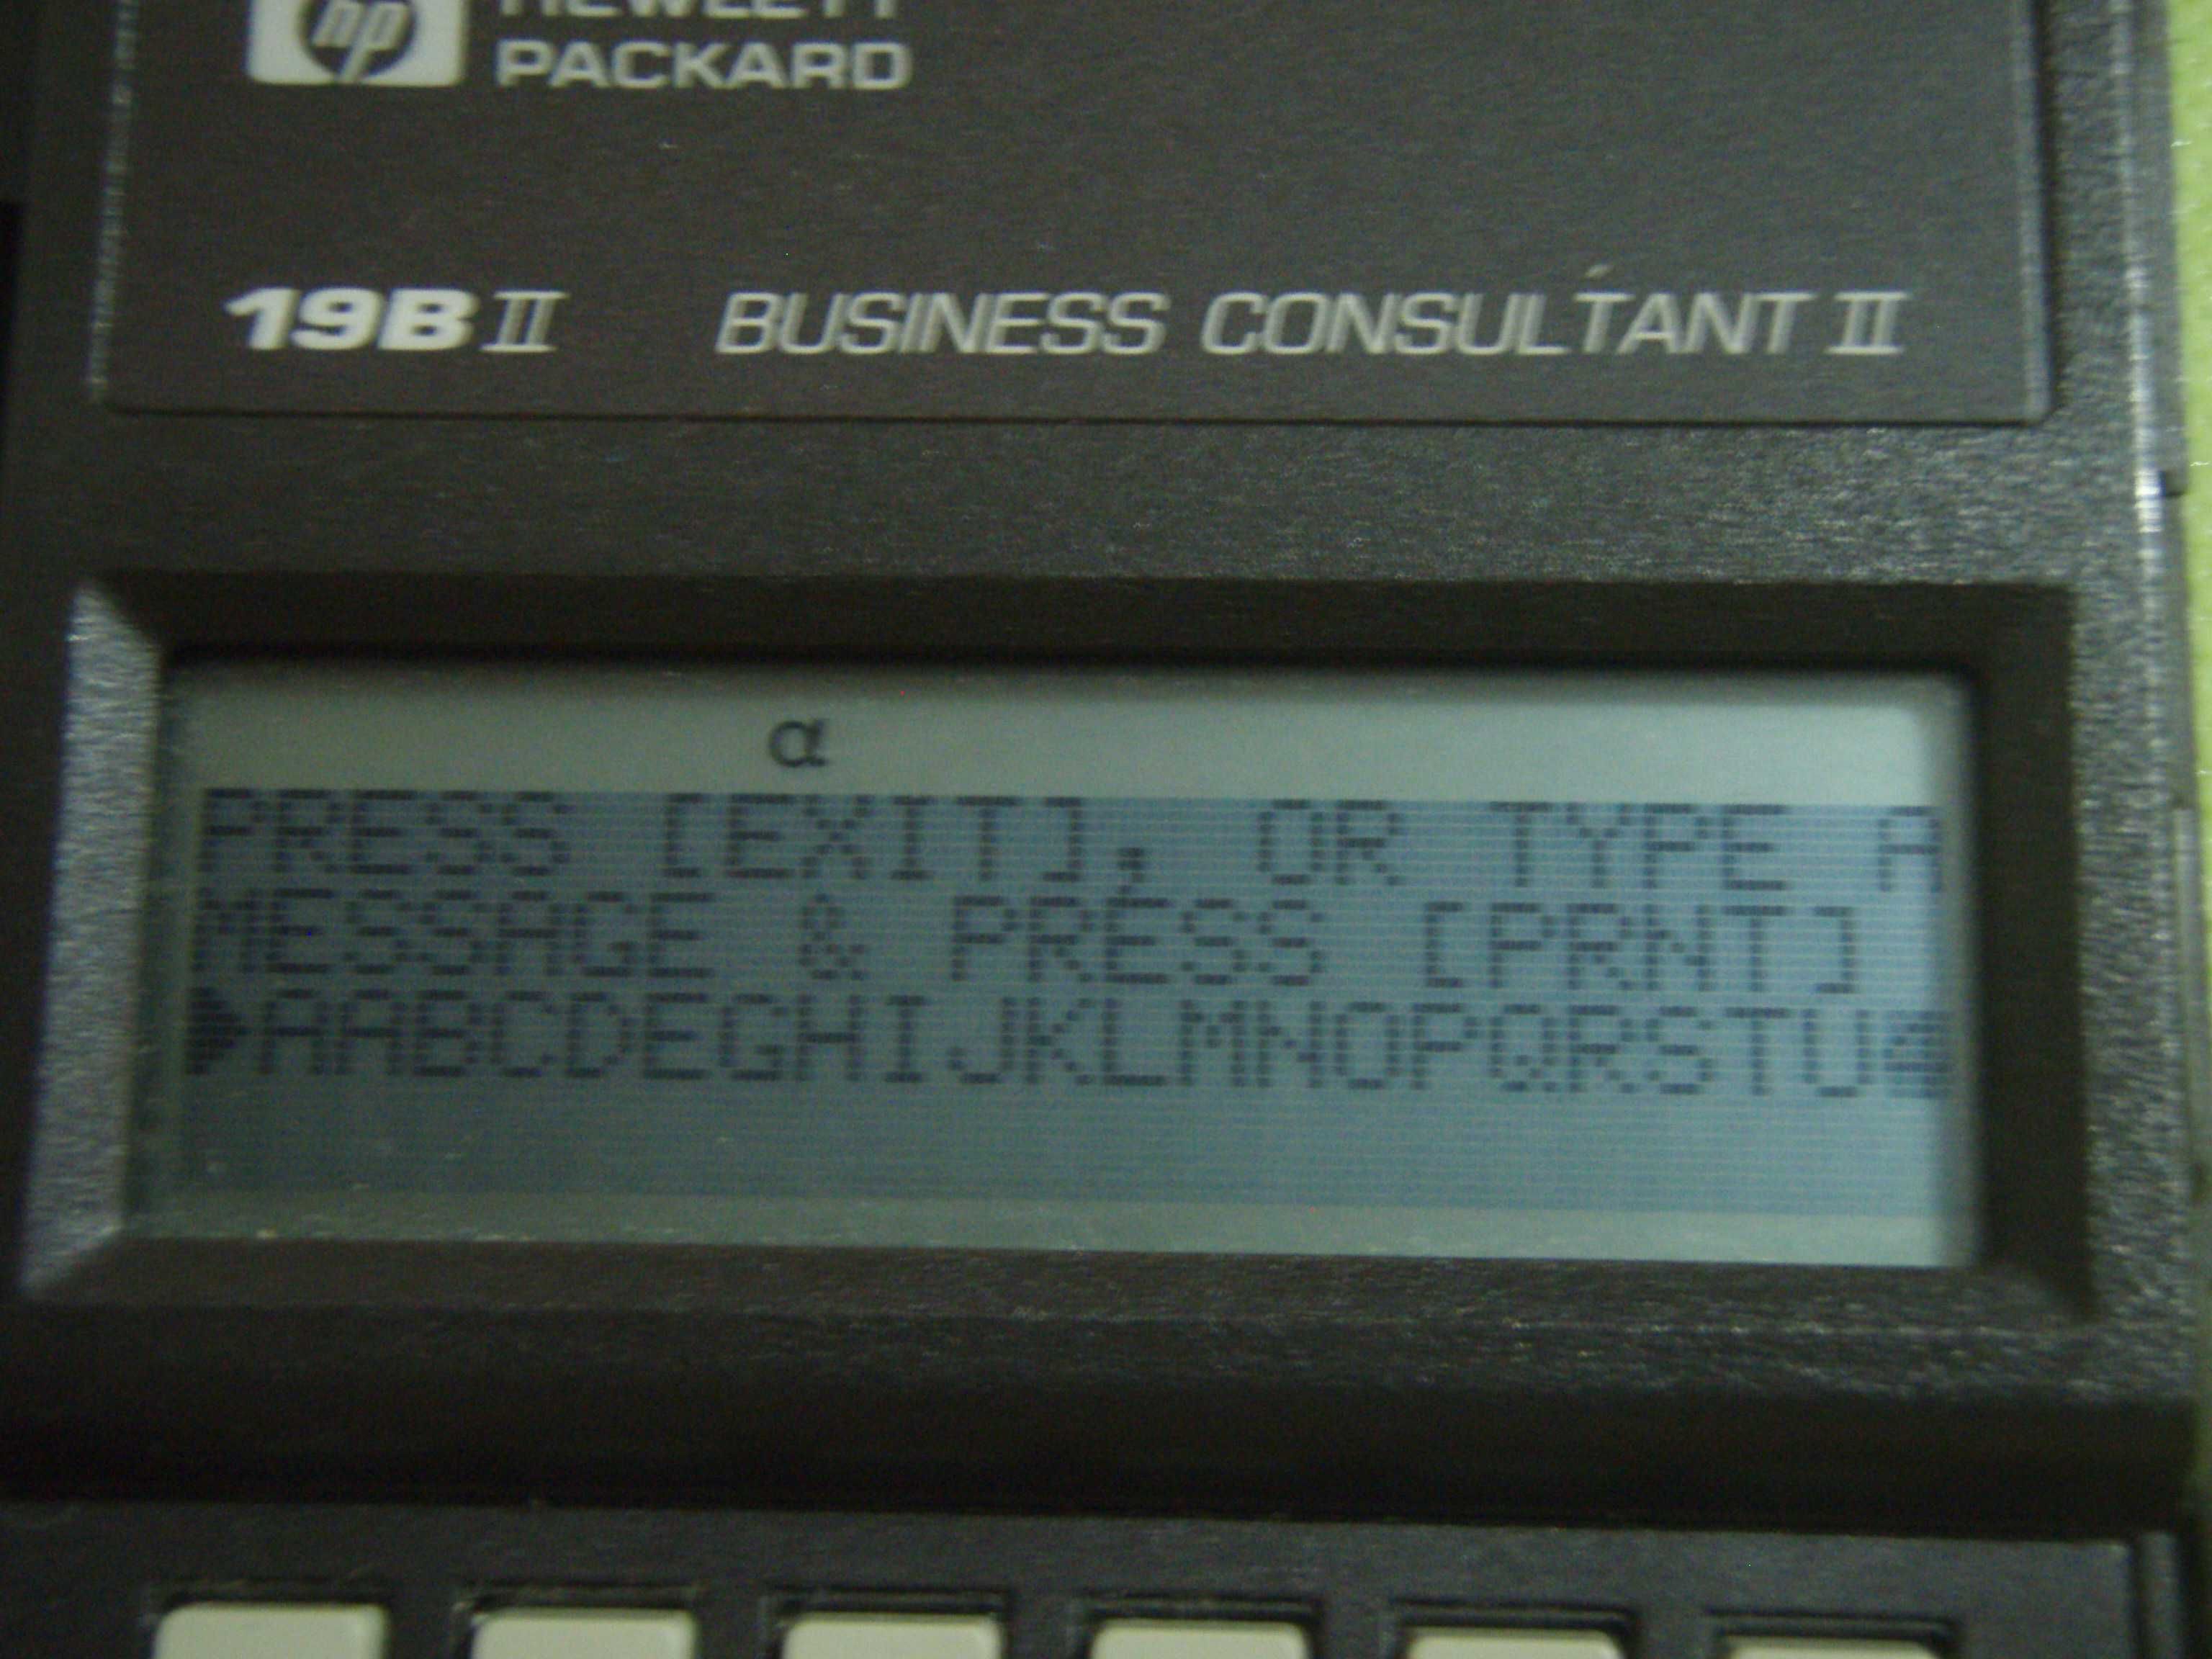 Calculator portabil HP 19B II BUSINESS CONSULTANT II